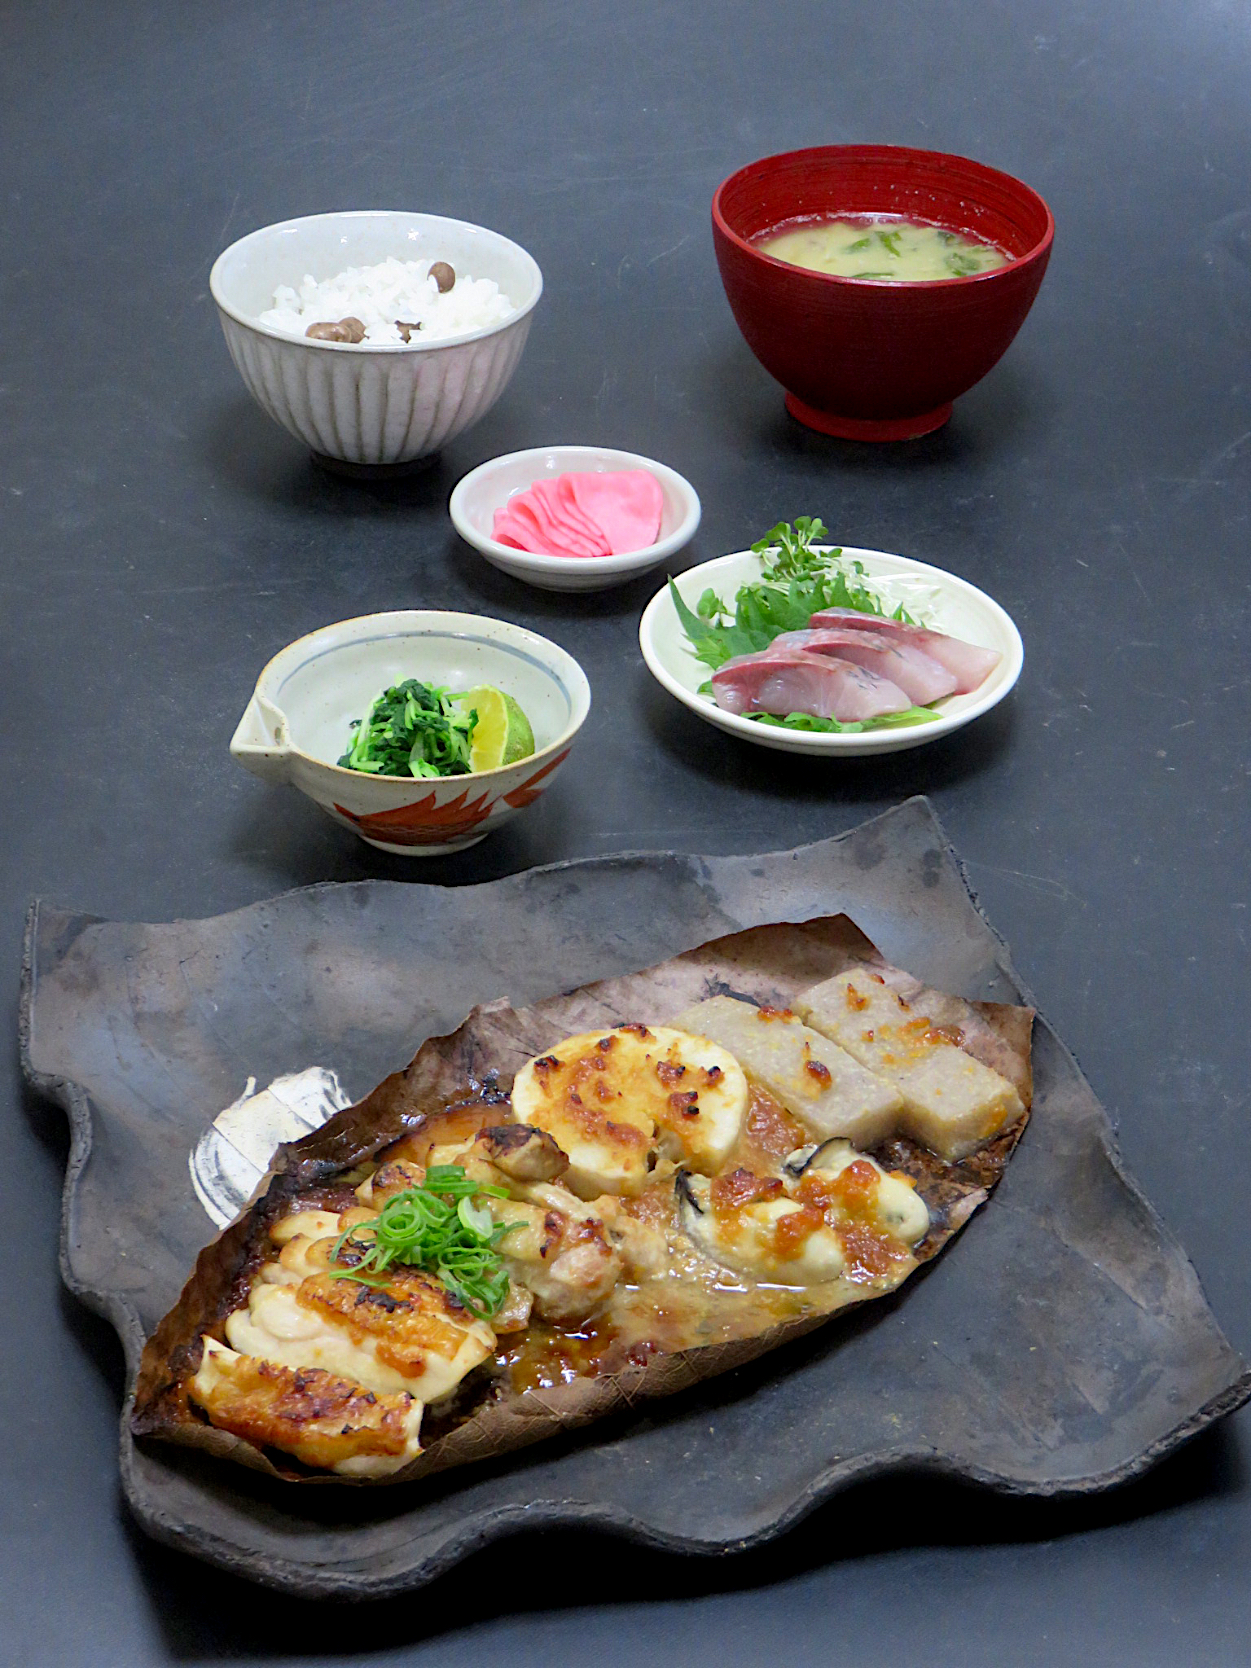 今晩は 朴葉みそ焼き 鶏肉 里芋 牡蠣 手作りこんにゃくつまみ菜 つばす造り 赤かぶ漬け 牡蠣と菊菜の味噌汁 むかごご飯 Akazawa3 Snapdish スナップディッシュ Id J1b4va